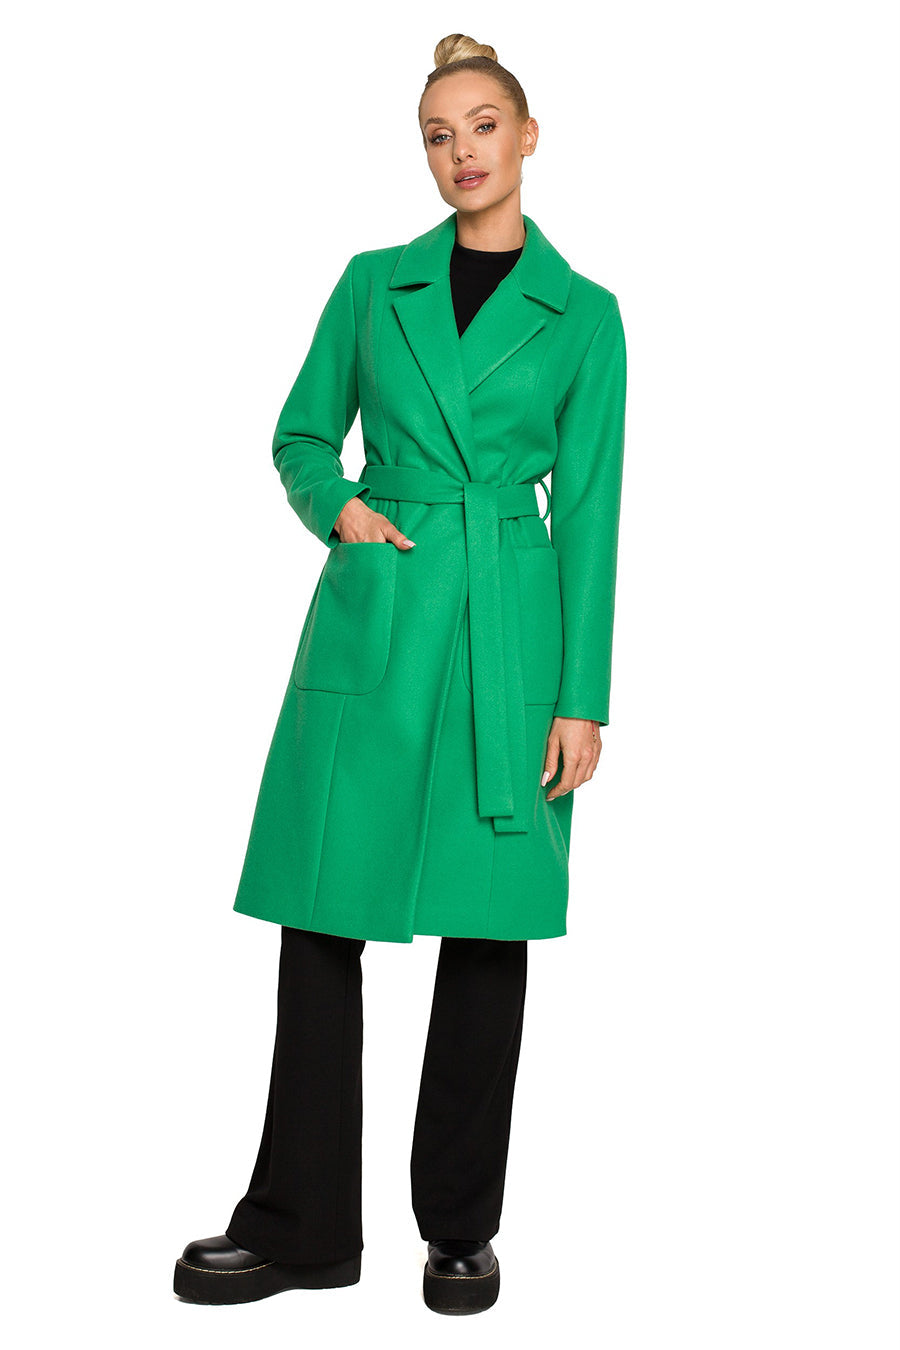 Γυναικείο παλτό Polymnia, Πράσινο 1